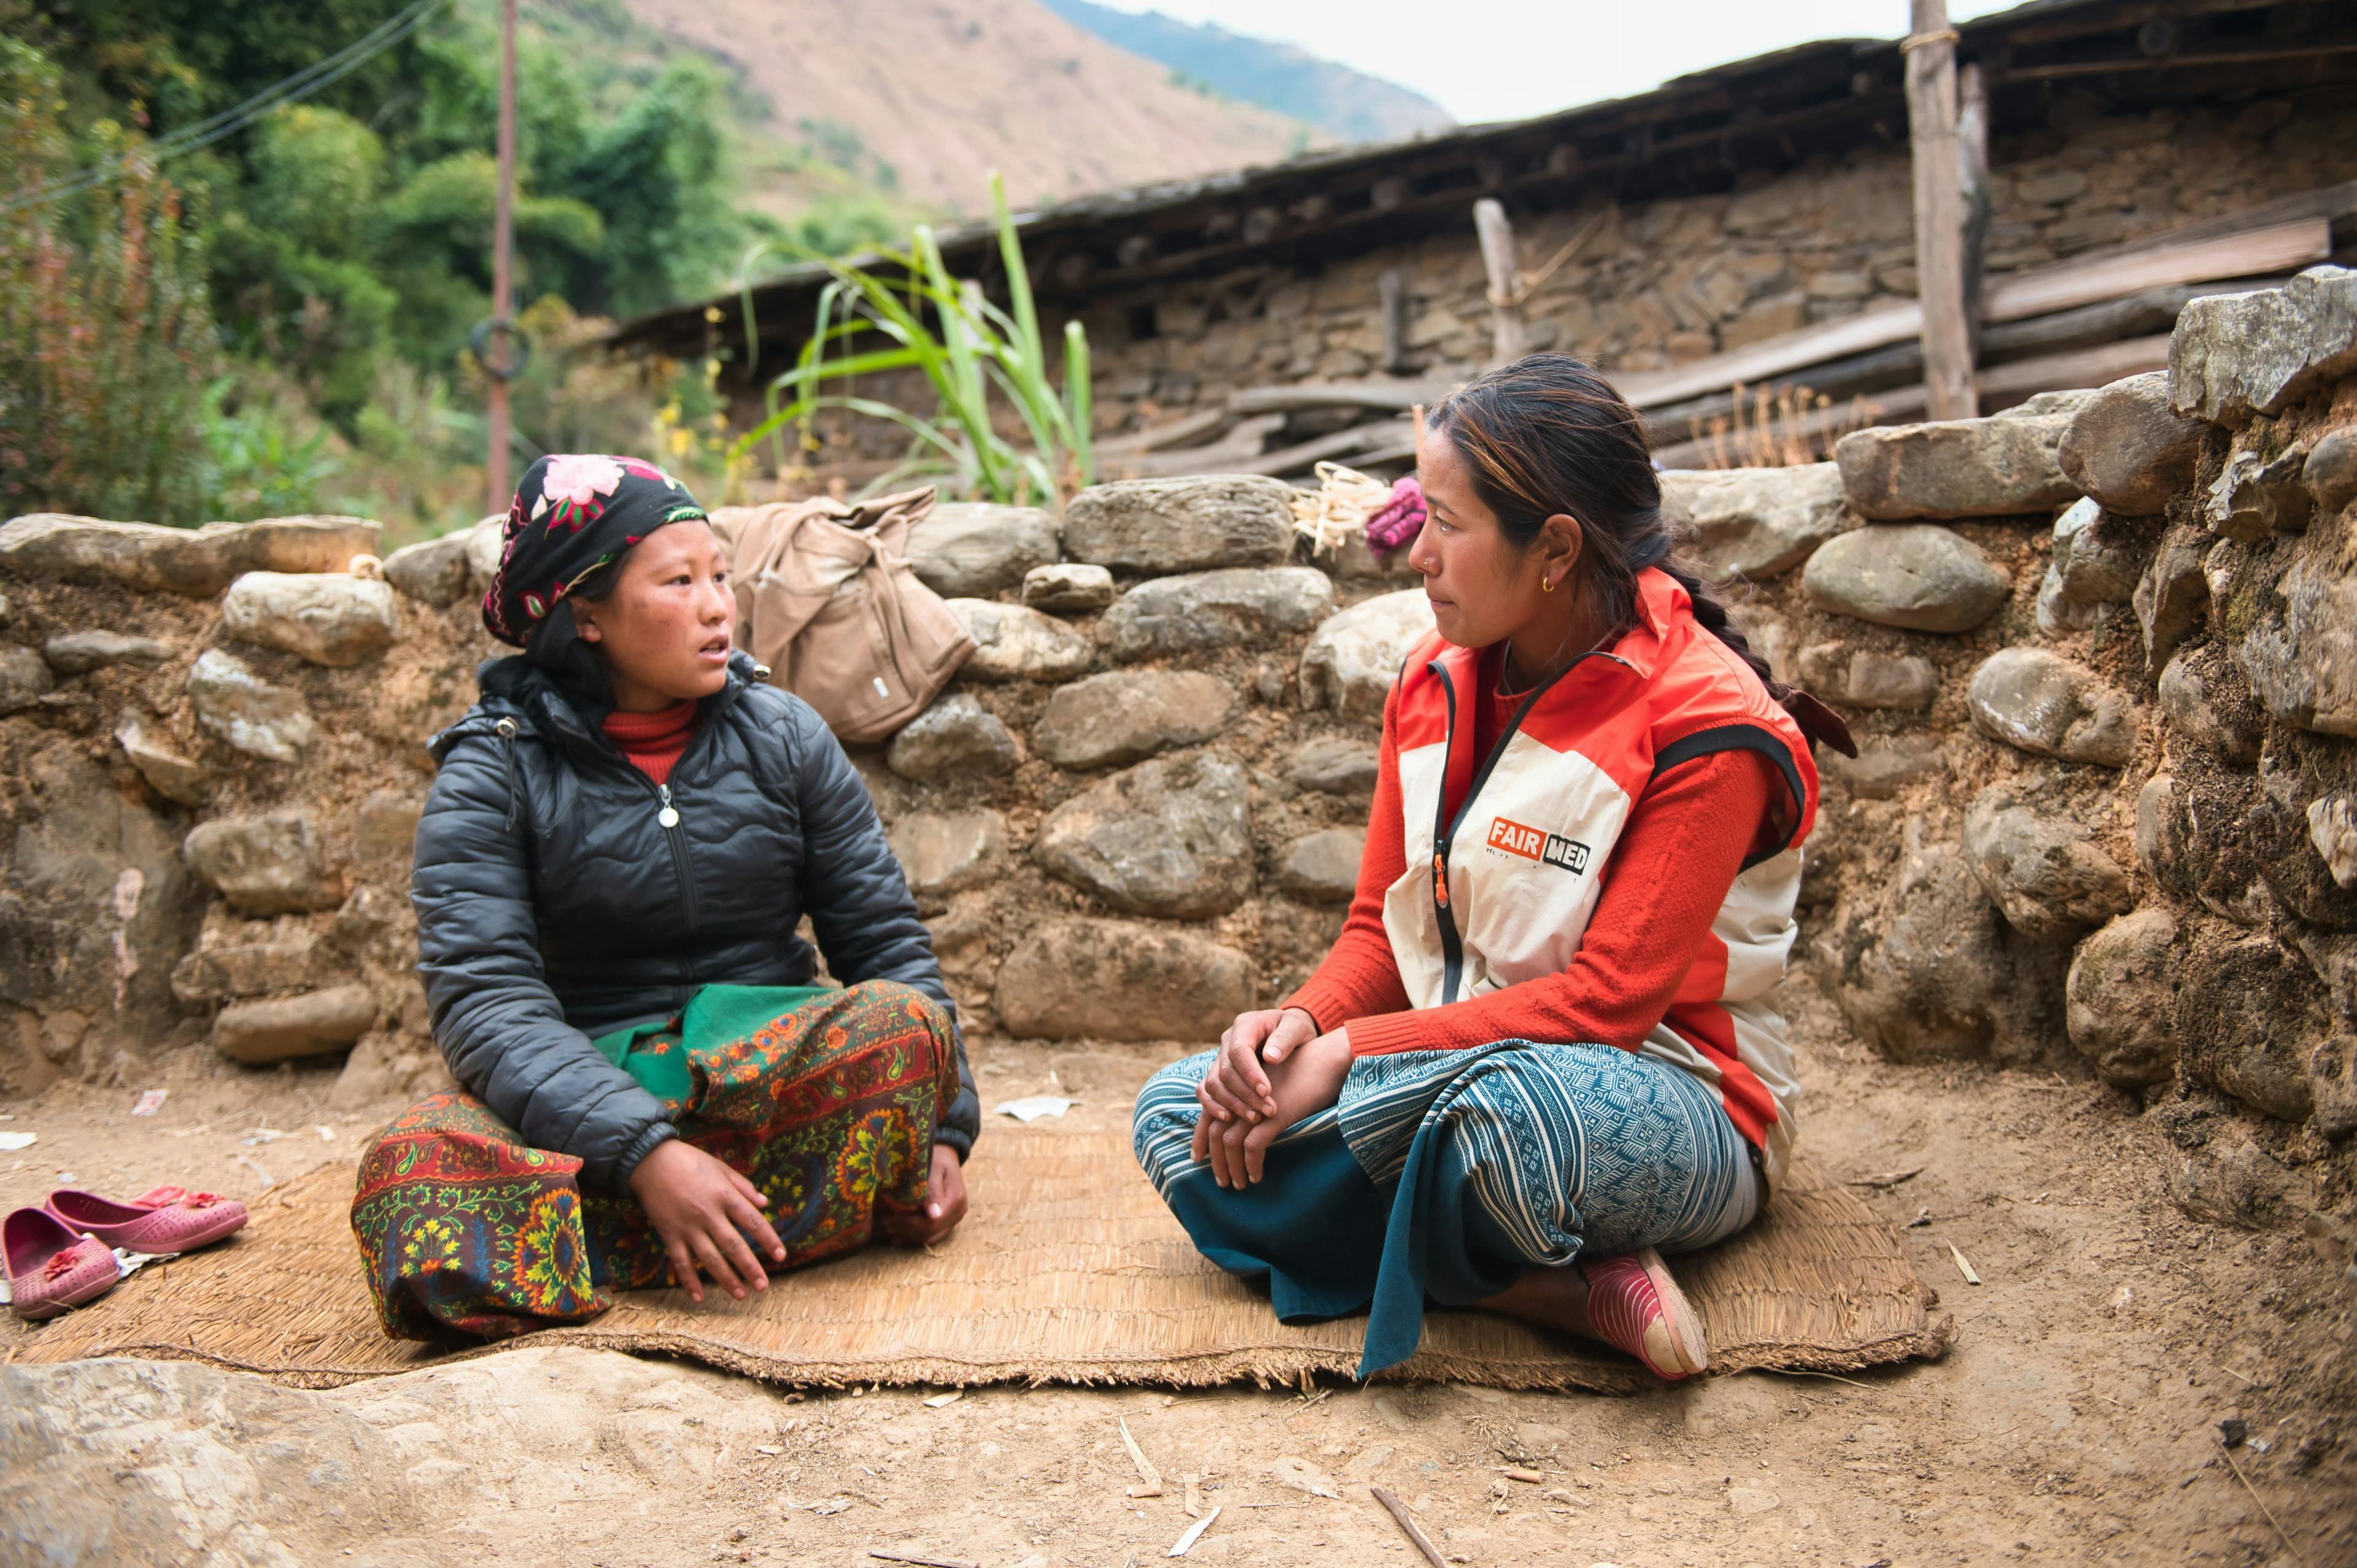 Gyan, jeune collaboratrice de FAIRMED, est assise par terre avec une jeune mère et lui donne des conseils sur sa santé et celle de son enfant. Elles sont assises sur une natte, avec en arrière-plan un mur de pierre et des éléments d'une hutte rudimentaire. La scène se déroule dans un village isolé de Baglung, au Népal.